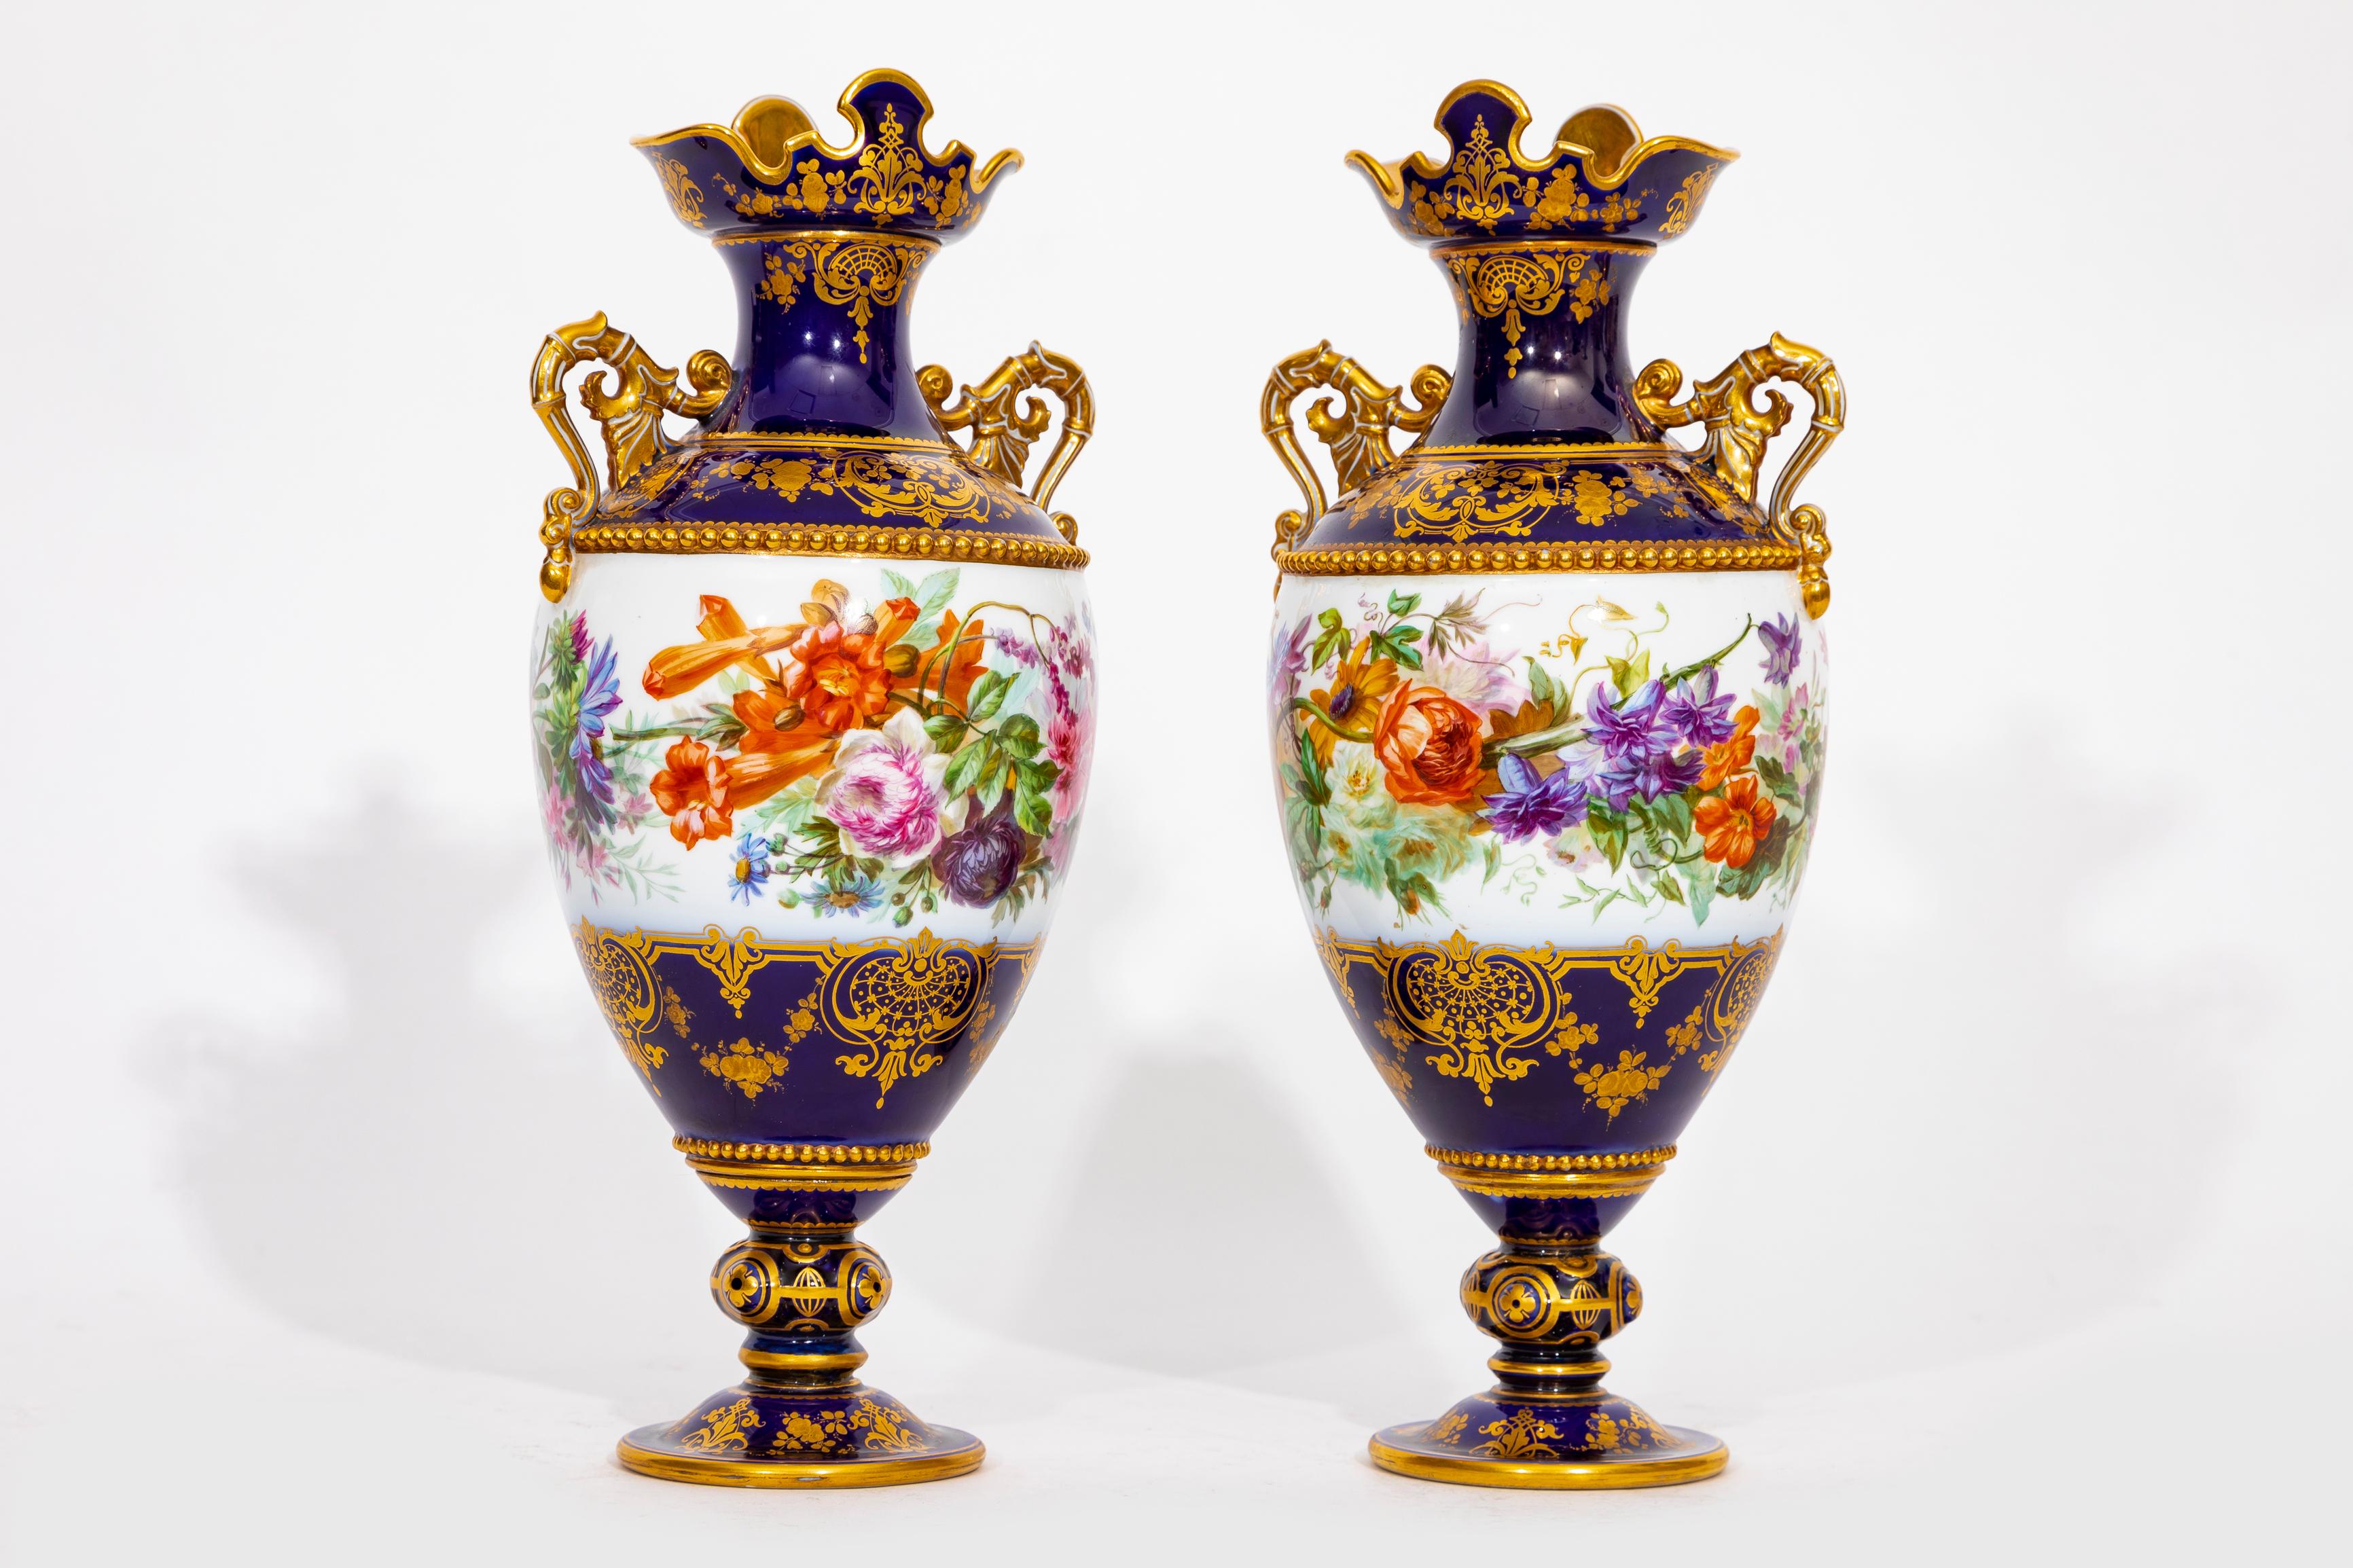 Paire incroyable et assez rare de vases en porcelaine de Sèvres à fond bleu cobalt Adélaïde, 2eme Grandeur ; 1843-1849, imprimé en vert S.49 vert imprimé S.49 pour 1849 sur le dessous de chaque socle, imprimé rouge de fer R.F. 49 décoration de la